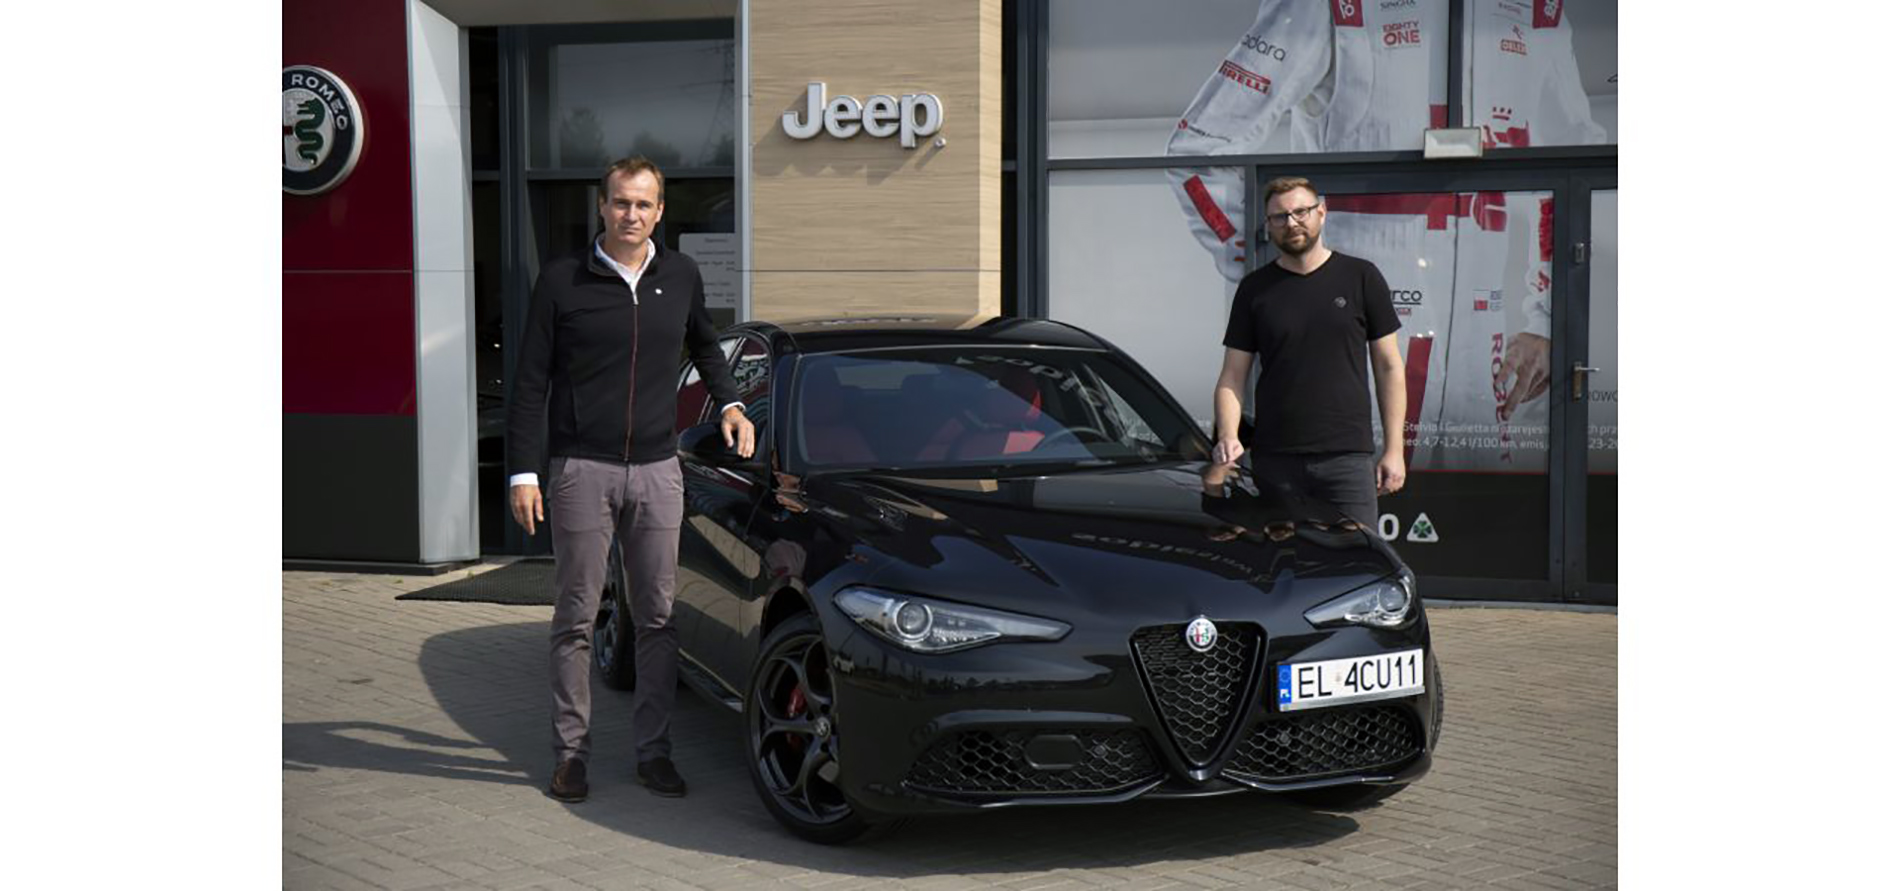 Sprzedaż Alfy Romeo w Polsce w 2021 roku przekroczyła 1000 samochodów